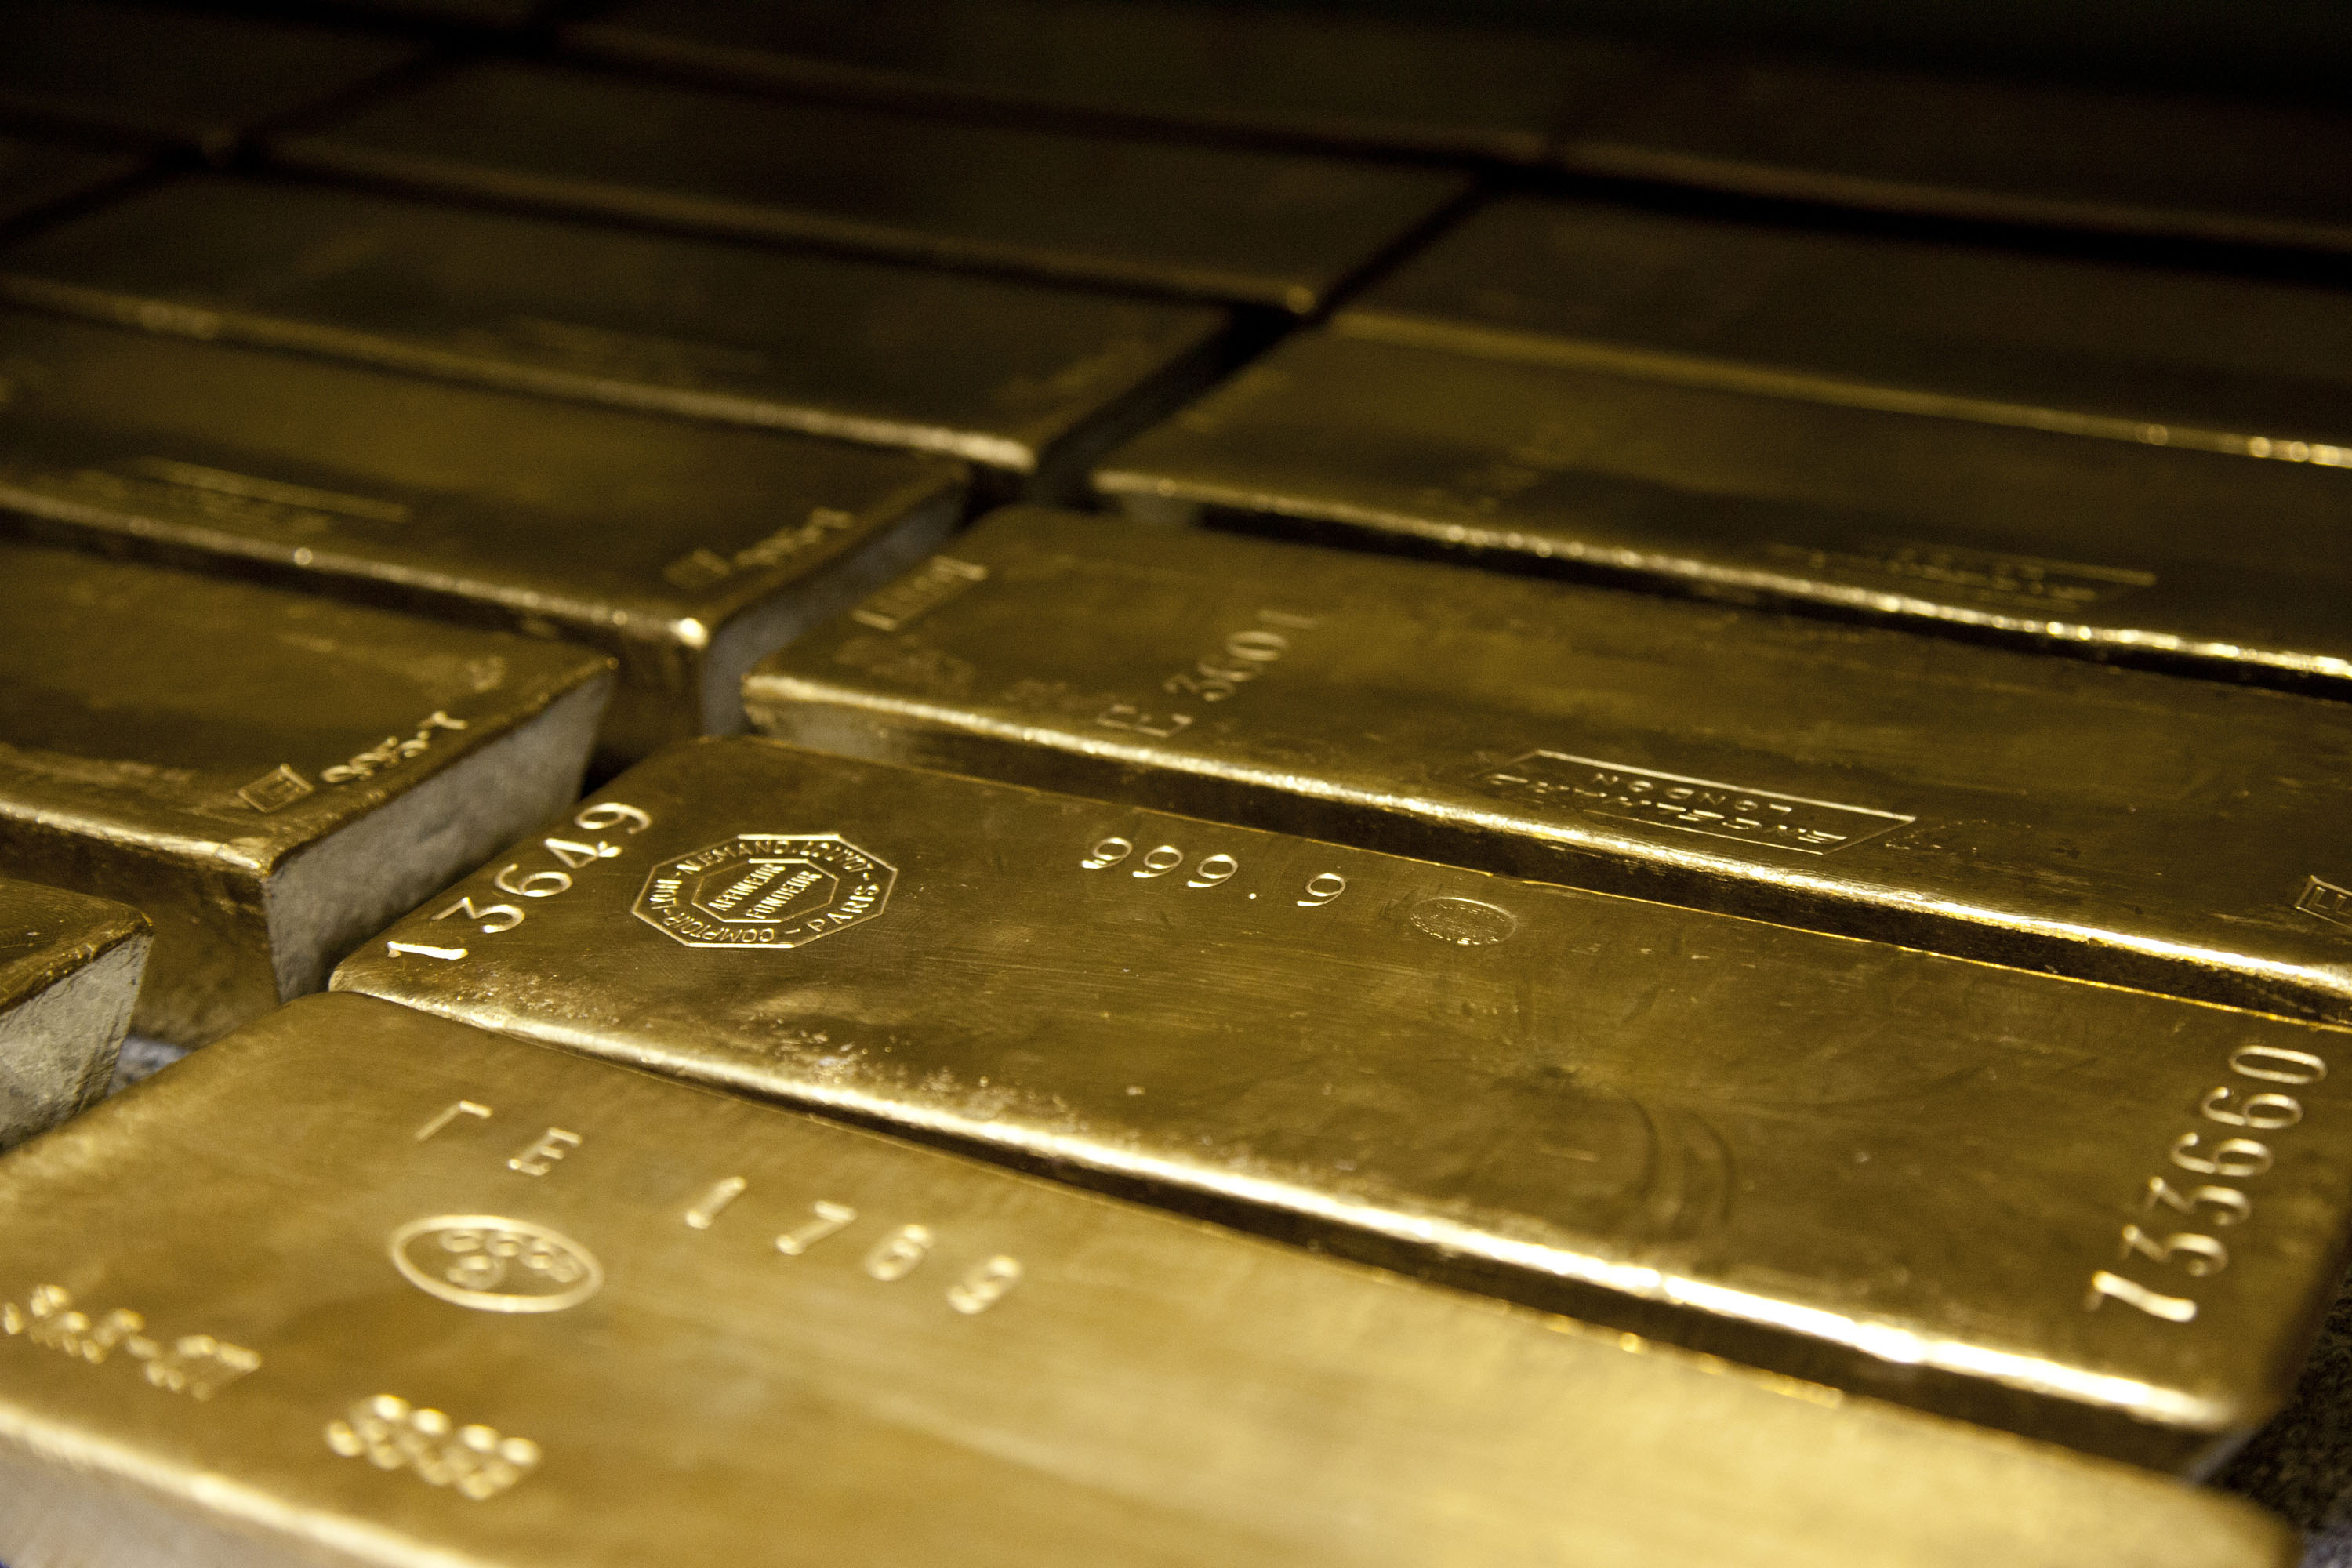 Цените на златото може да скочат до 4000 долара за